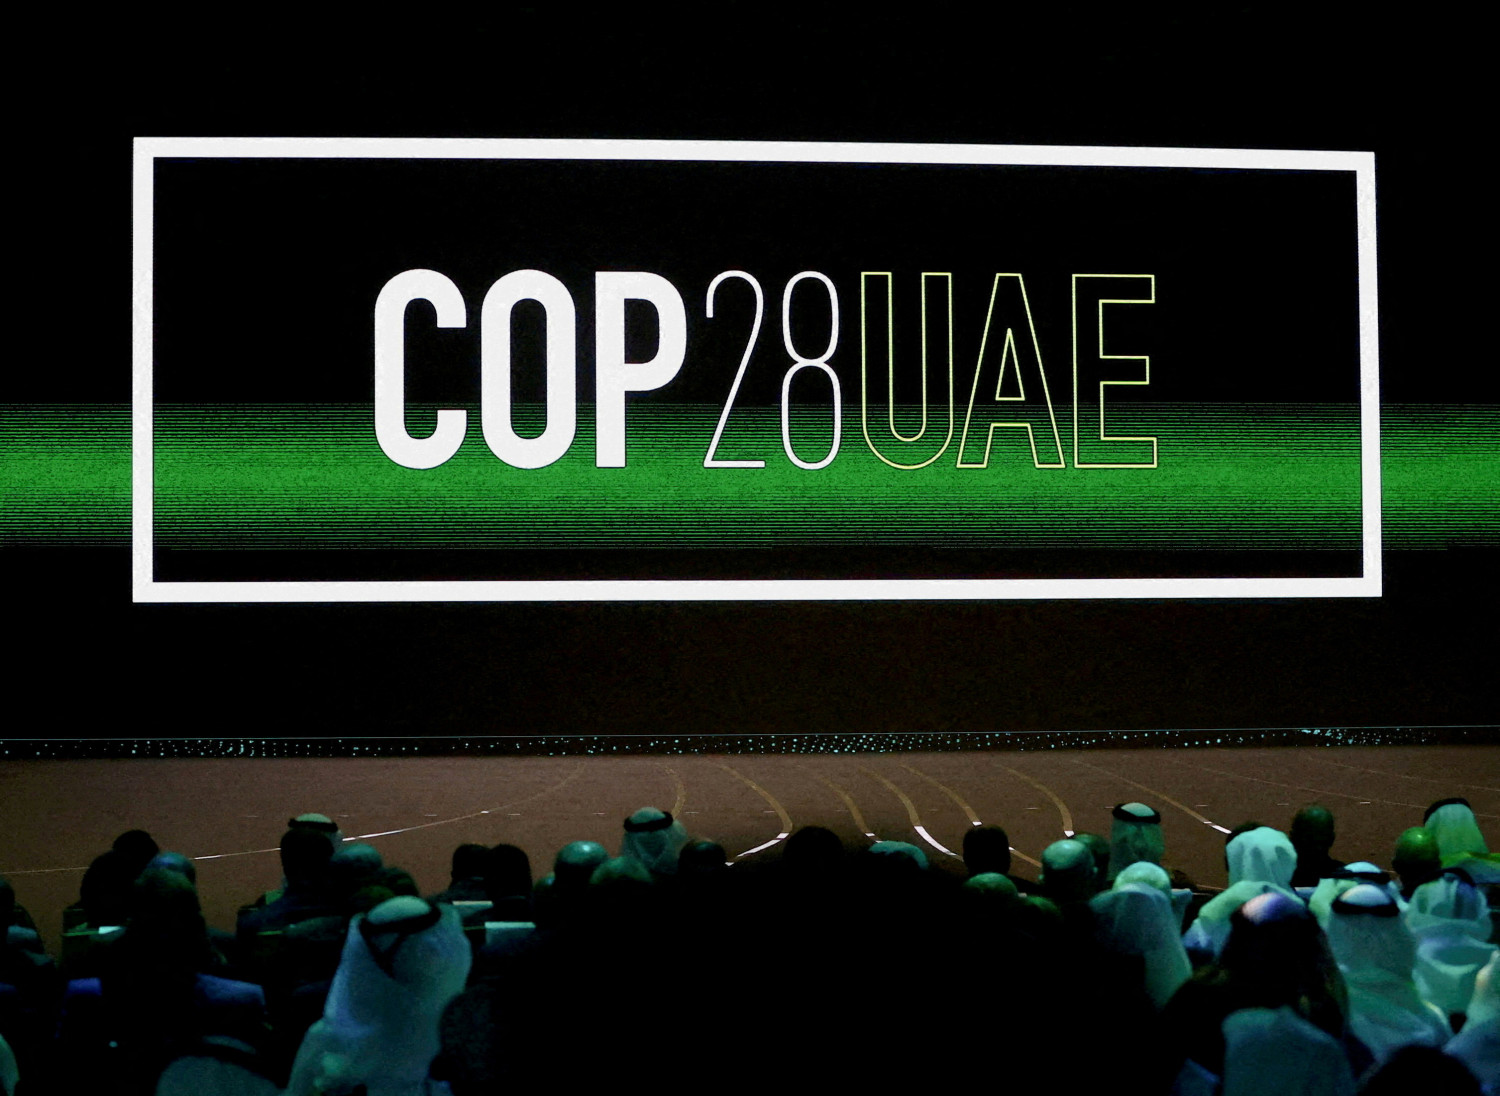 le logo cop28 uae sur l ecran lors de la ceremonie d ouverture de la semaine du developpement durable d abou dhabi 20231130200440 